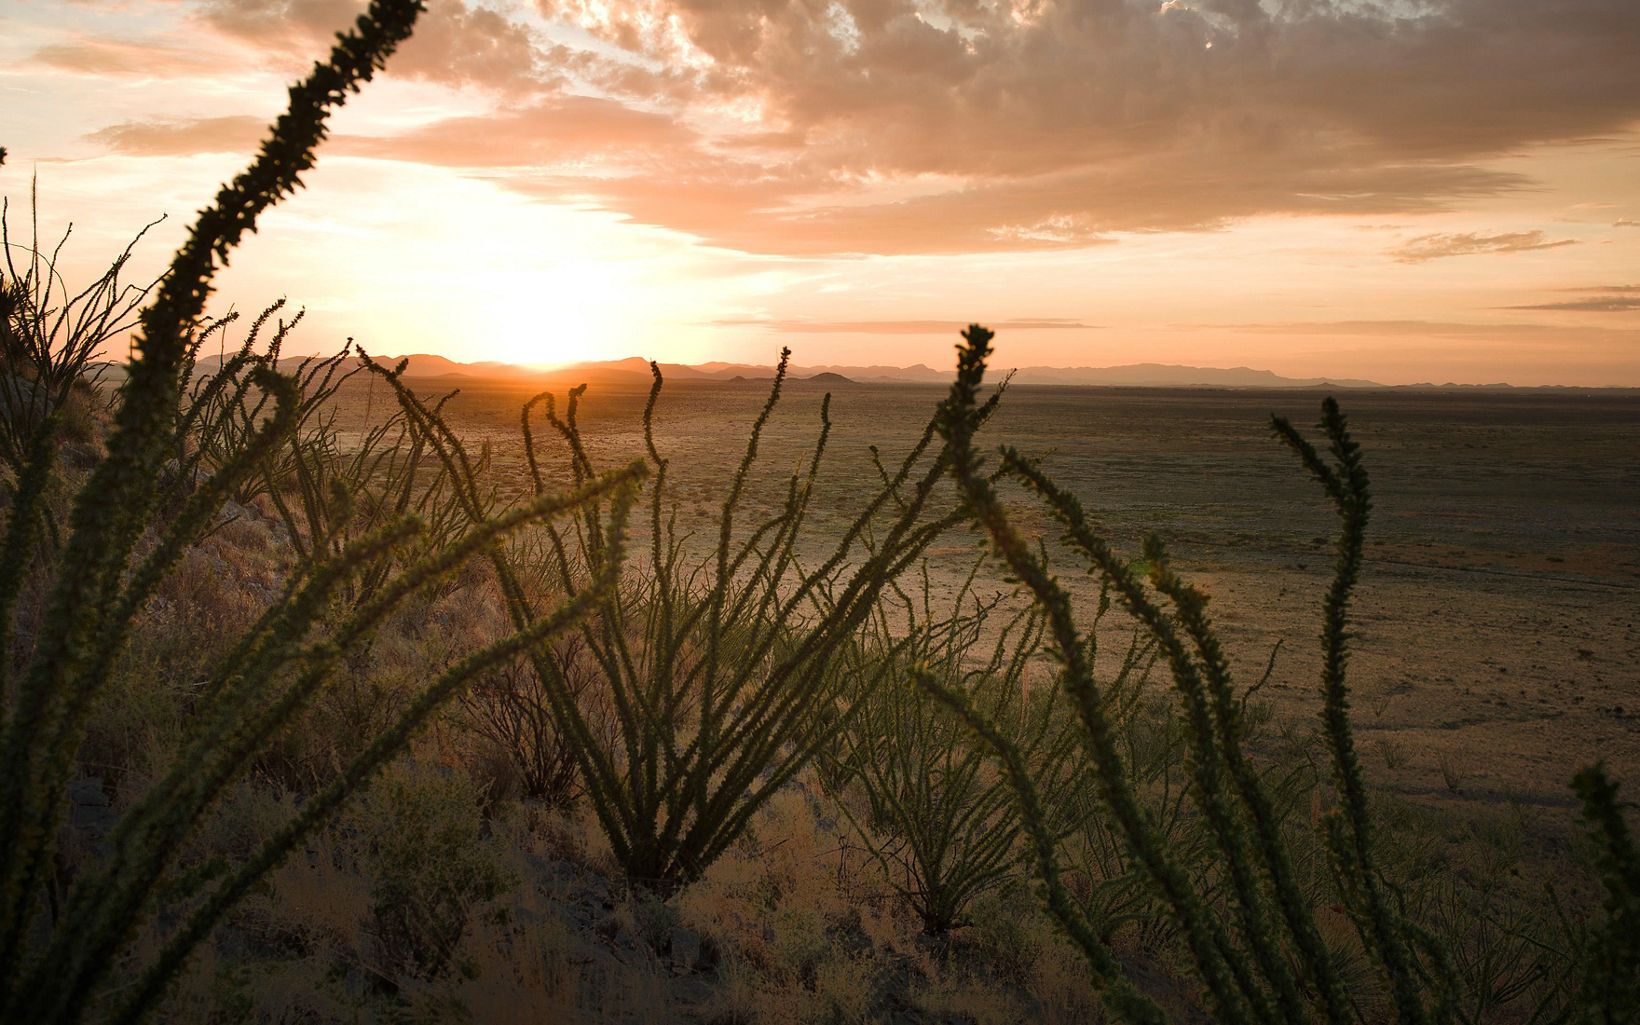 Rancho El Uno A 46,000-acre ranch in northern Mexico’s Janos Valley. © Dave Lauridsen